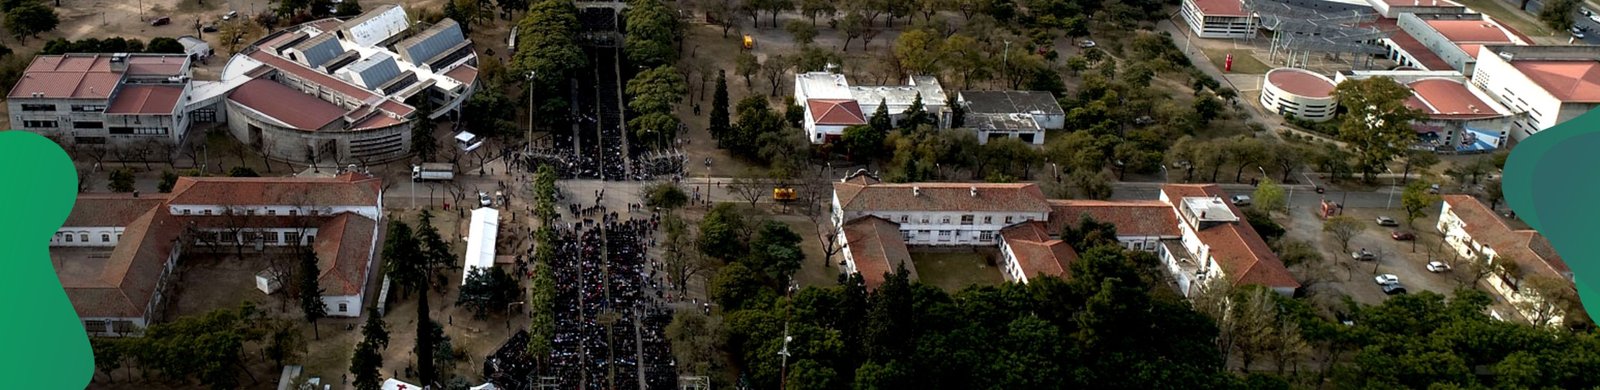 Aniversario de la Universidad Nacional de Córdoba.jpg